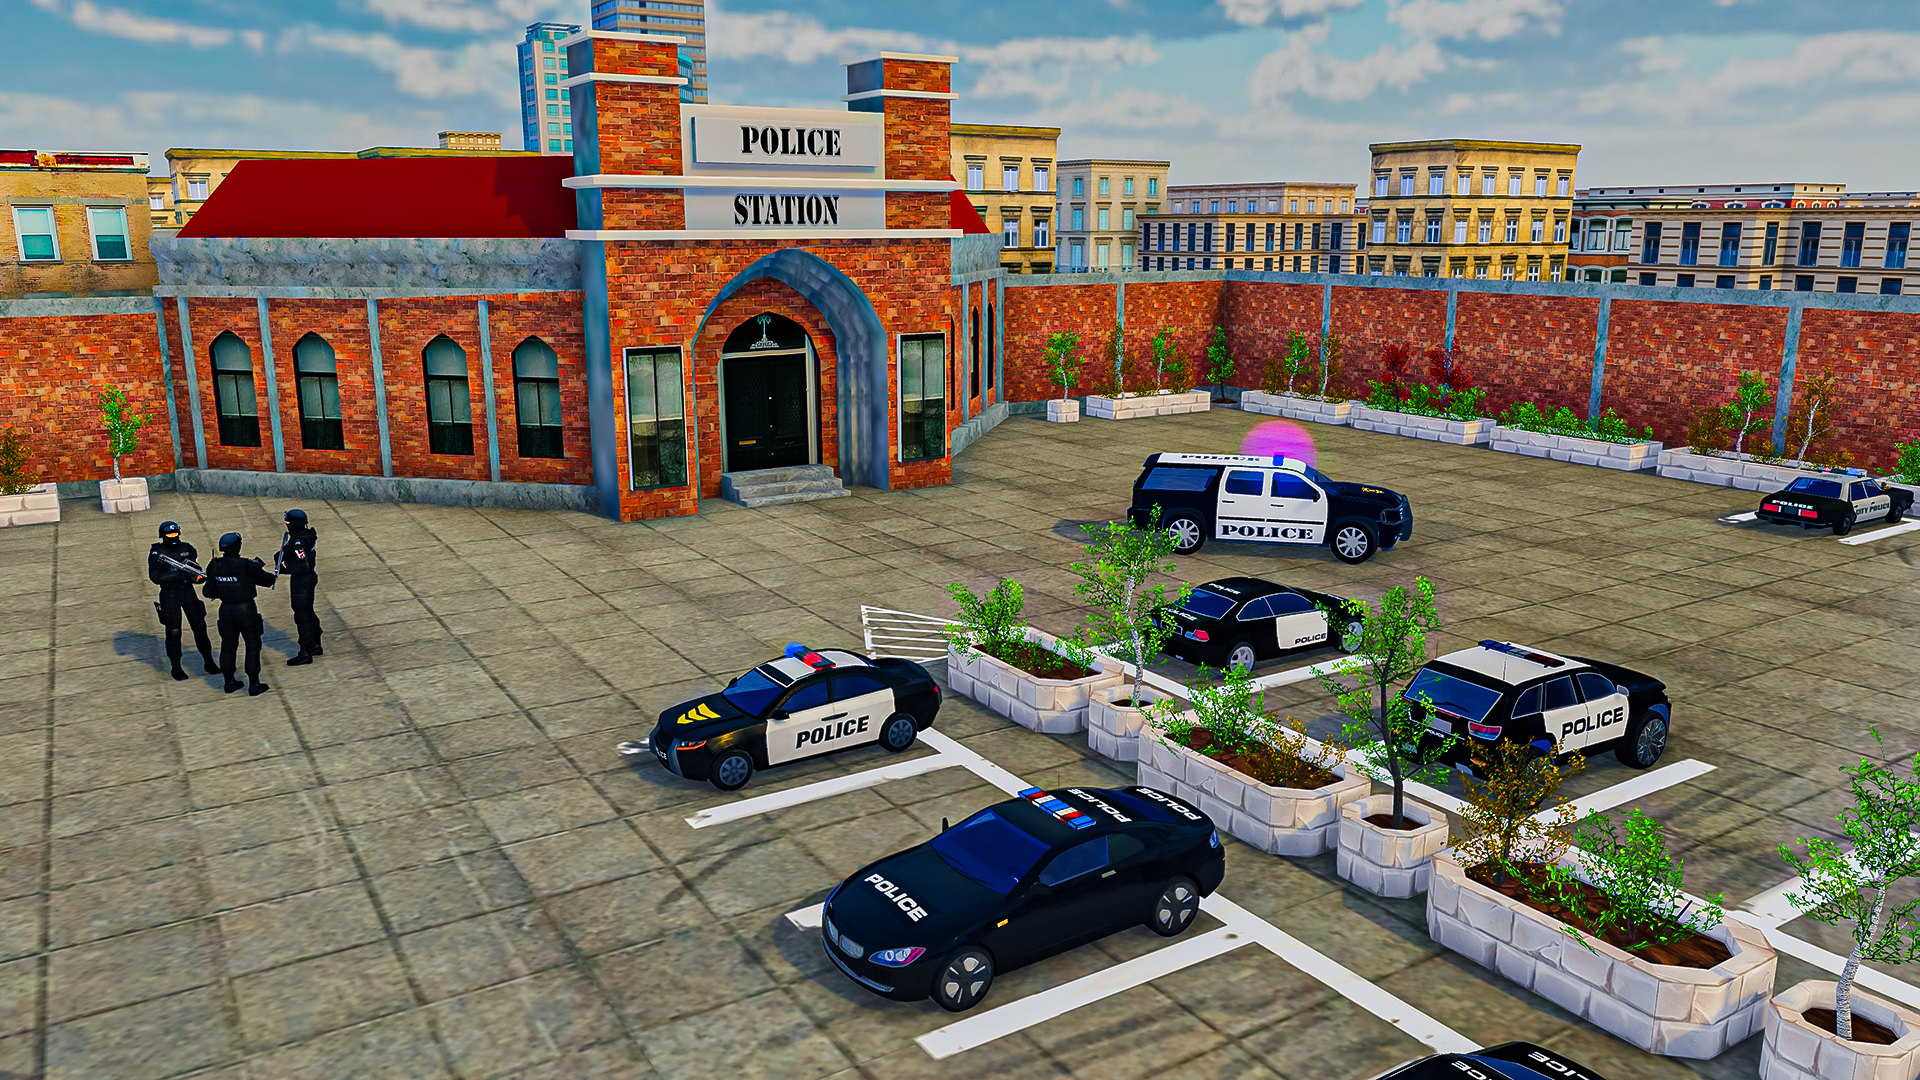 Download do APK de Fuga de carro da polícia para Android